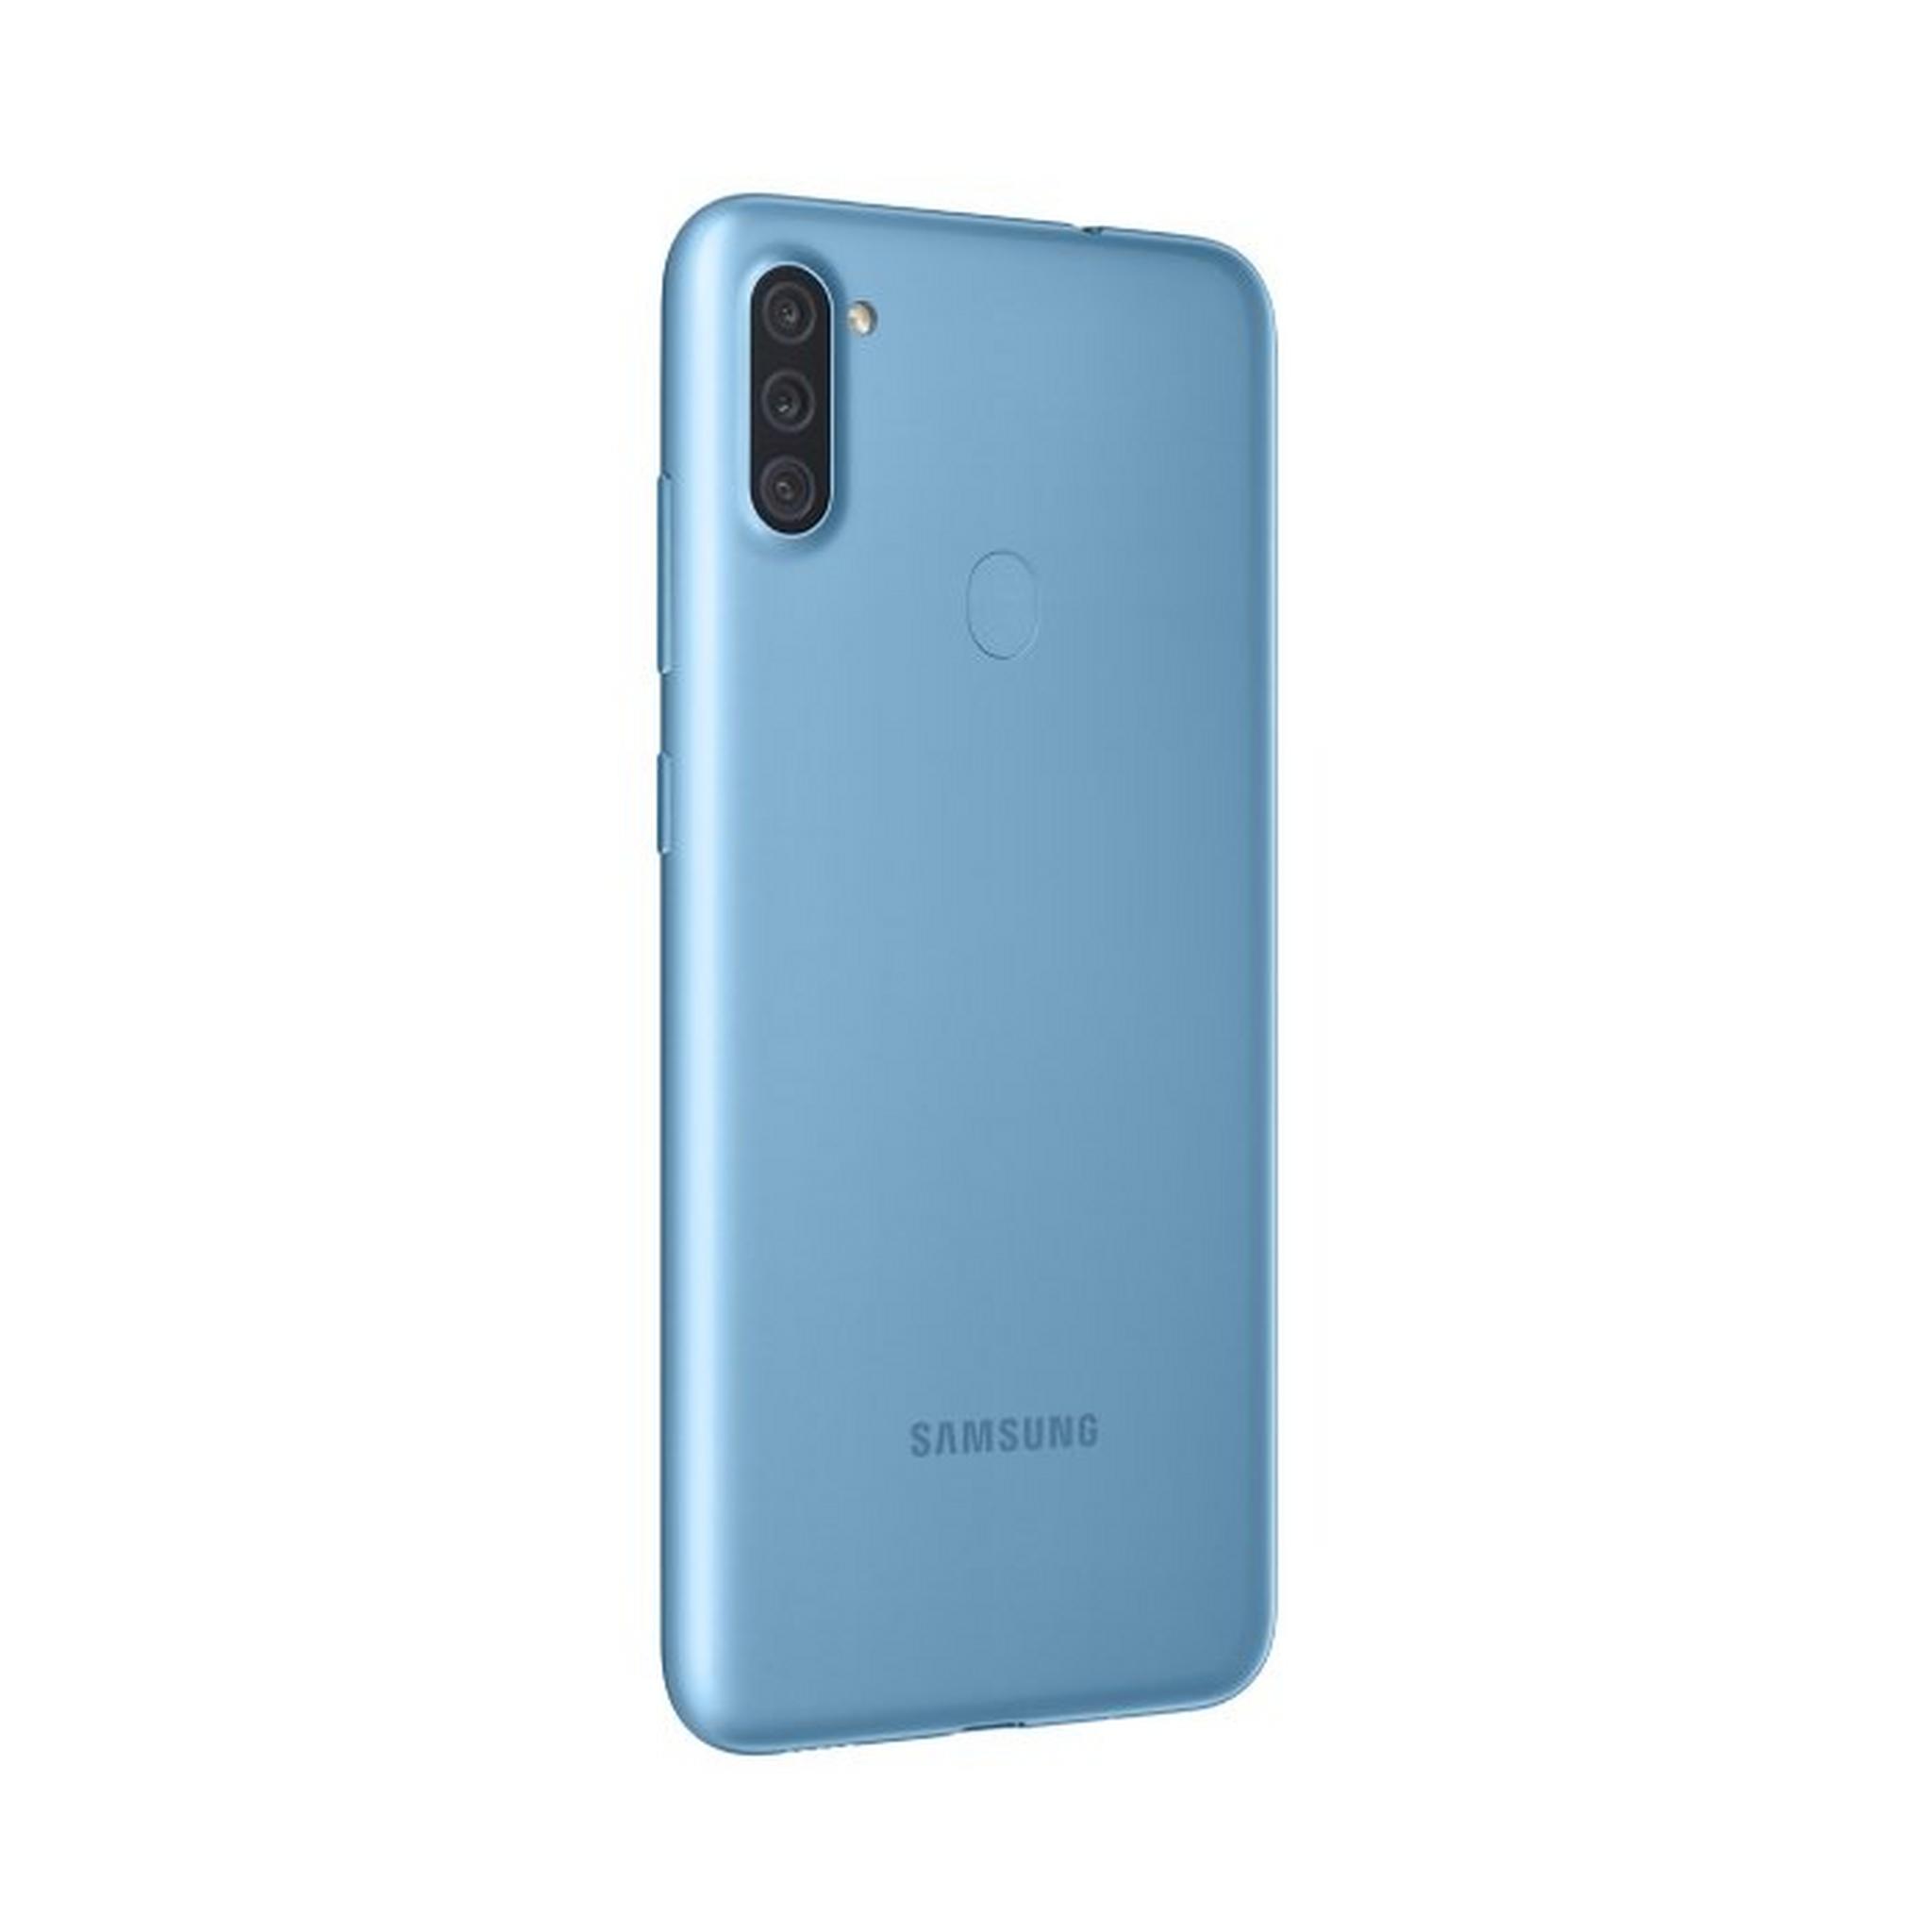 Samsung Galaxy A11 Phone 32GB - Blue